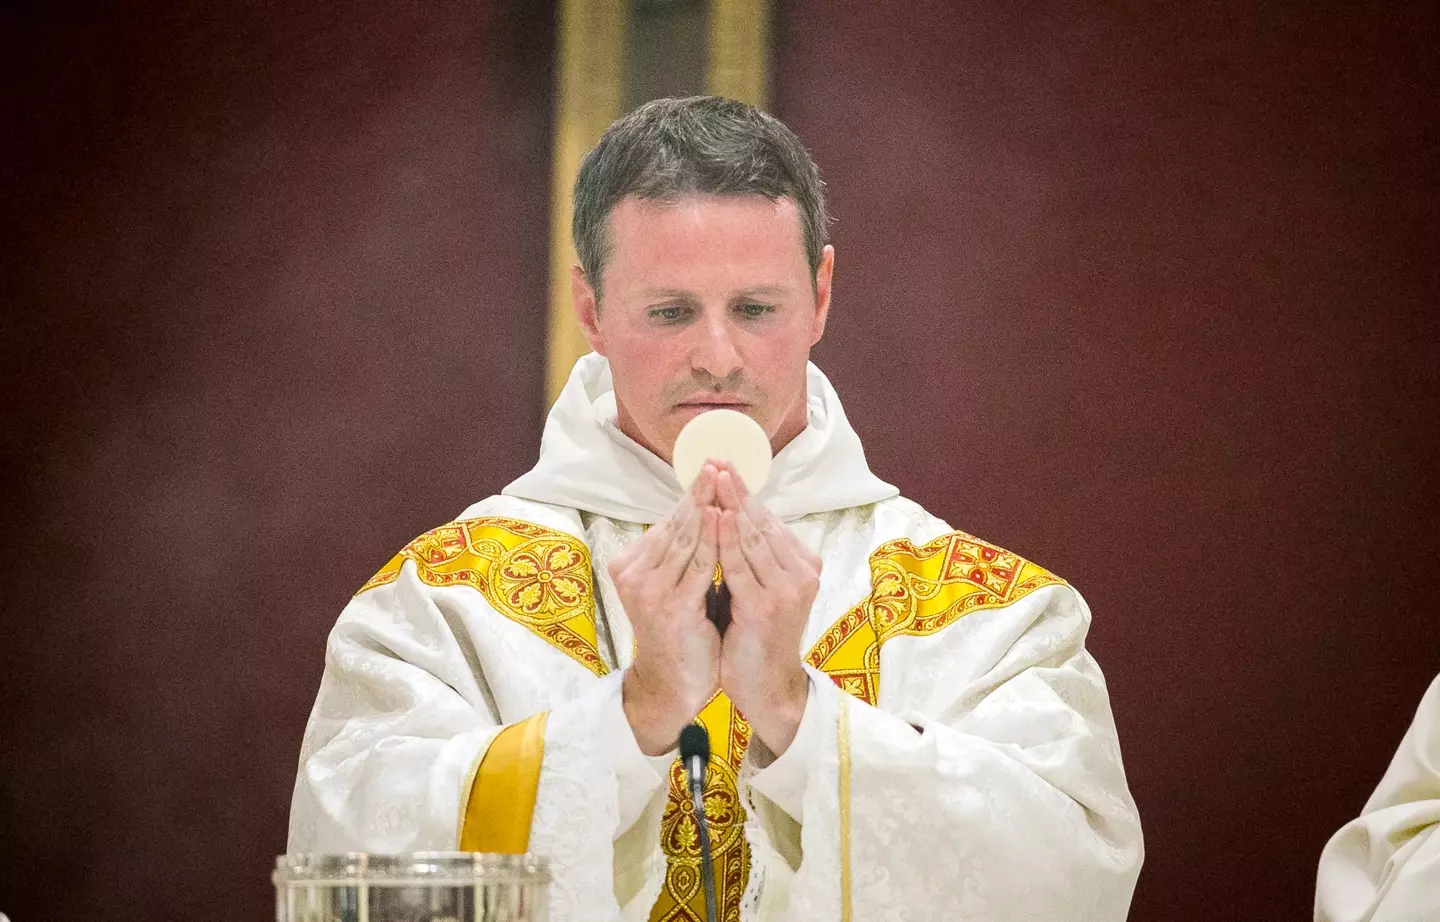 Mulryne was ordained in Belfast in 2017.